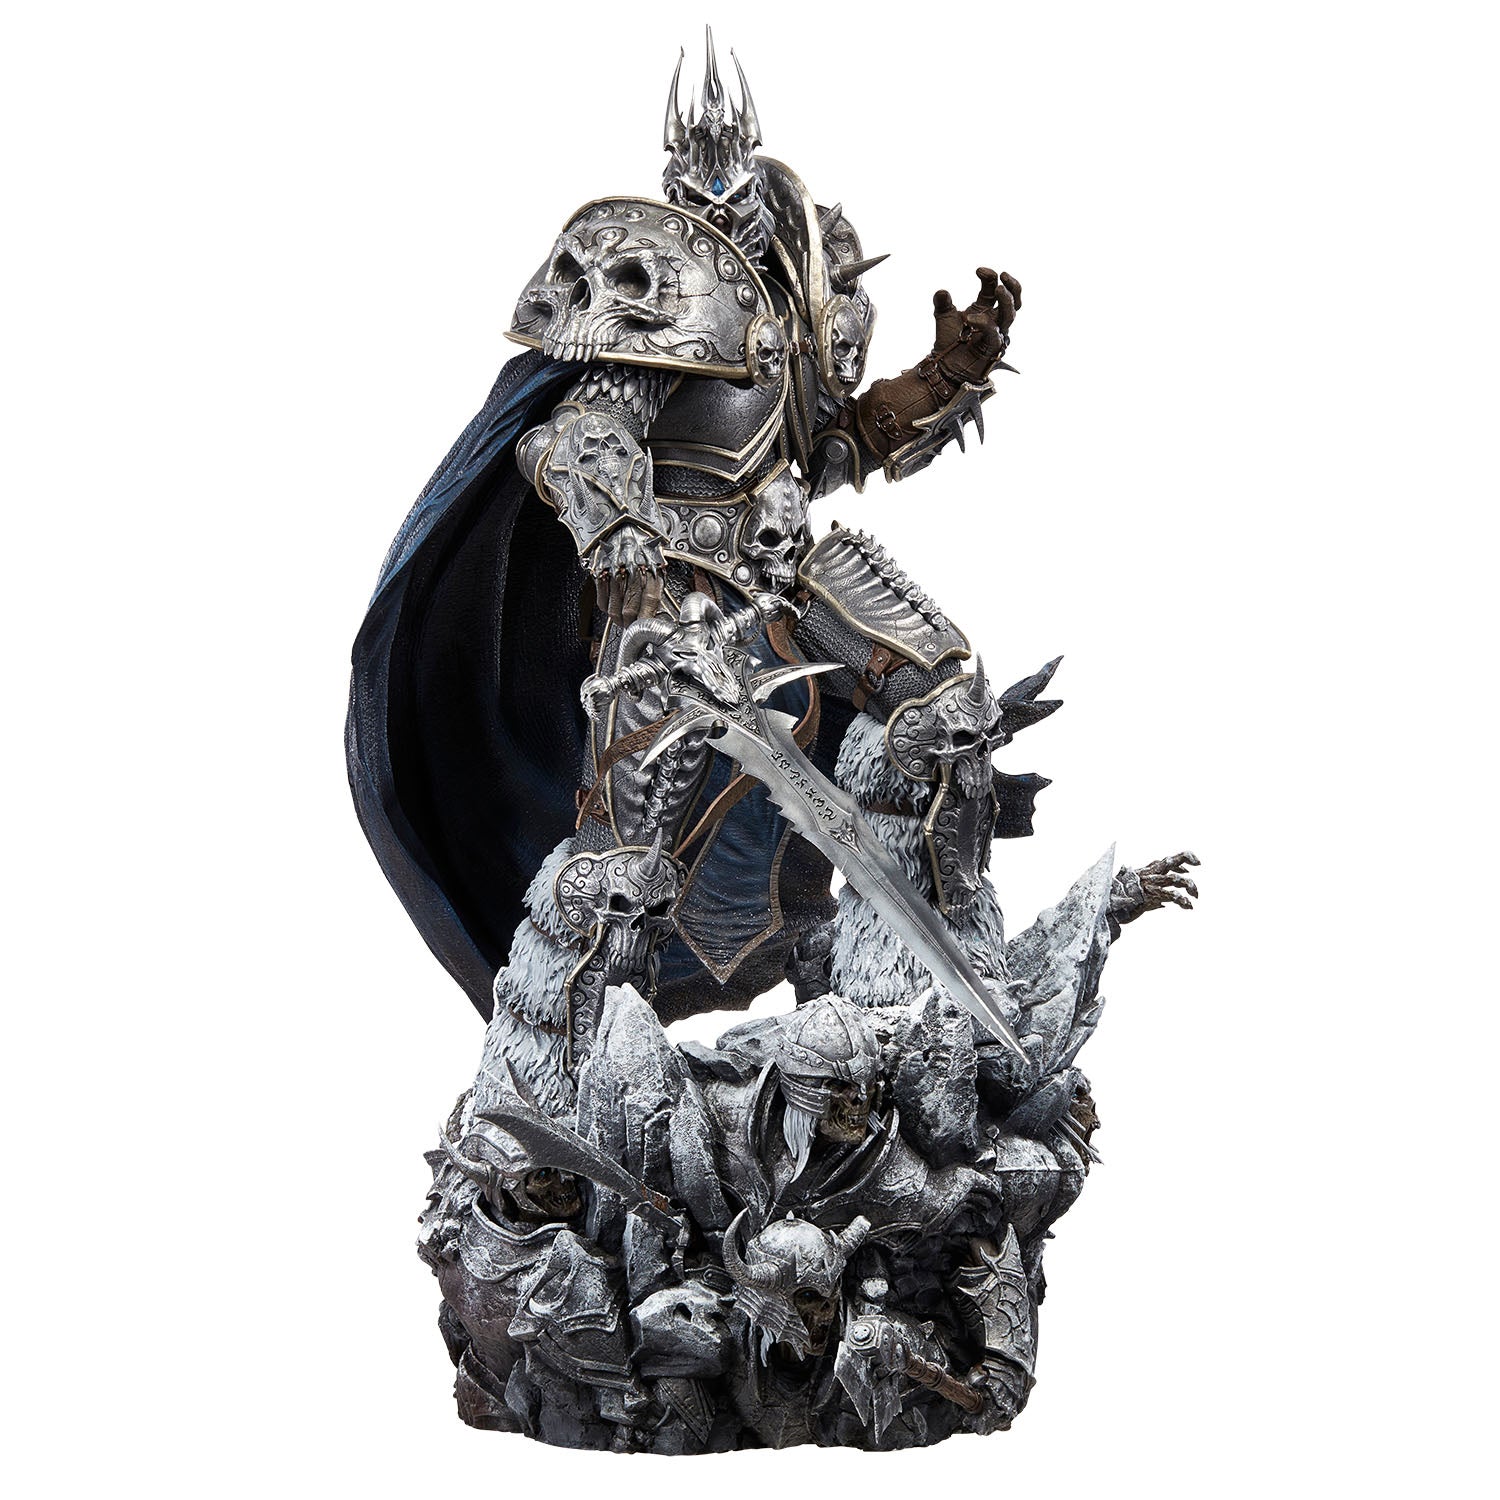 World of Warcraft Lich King Arthas 26" Premium Statue in Grey - Front View